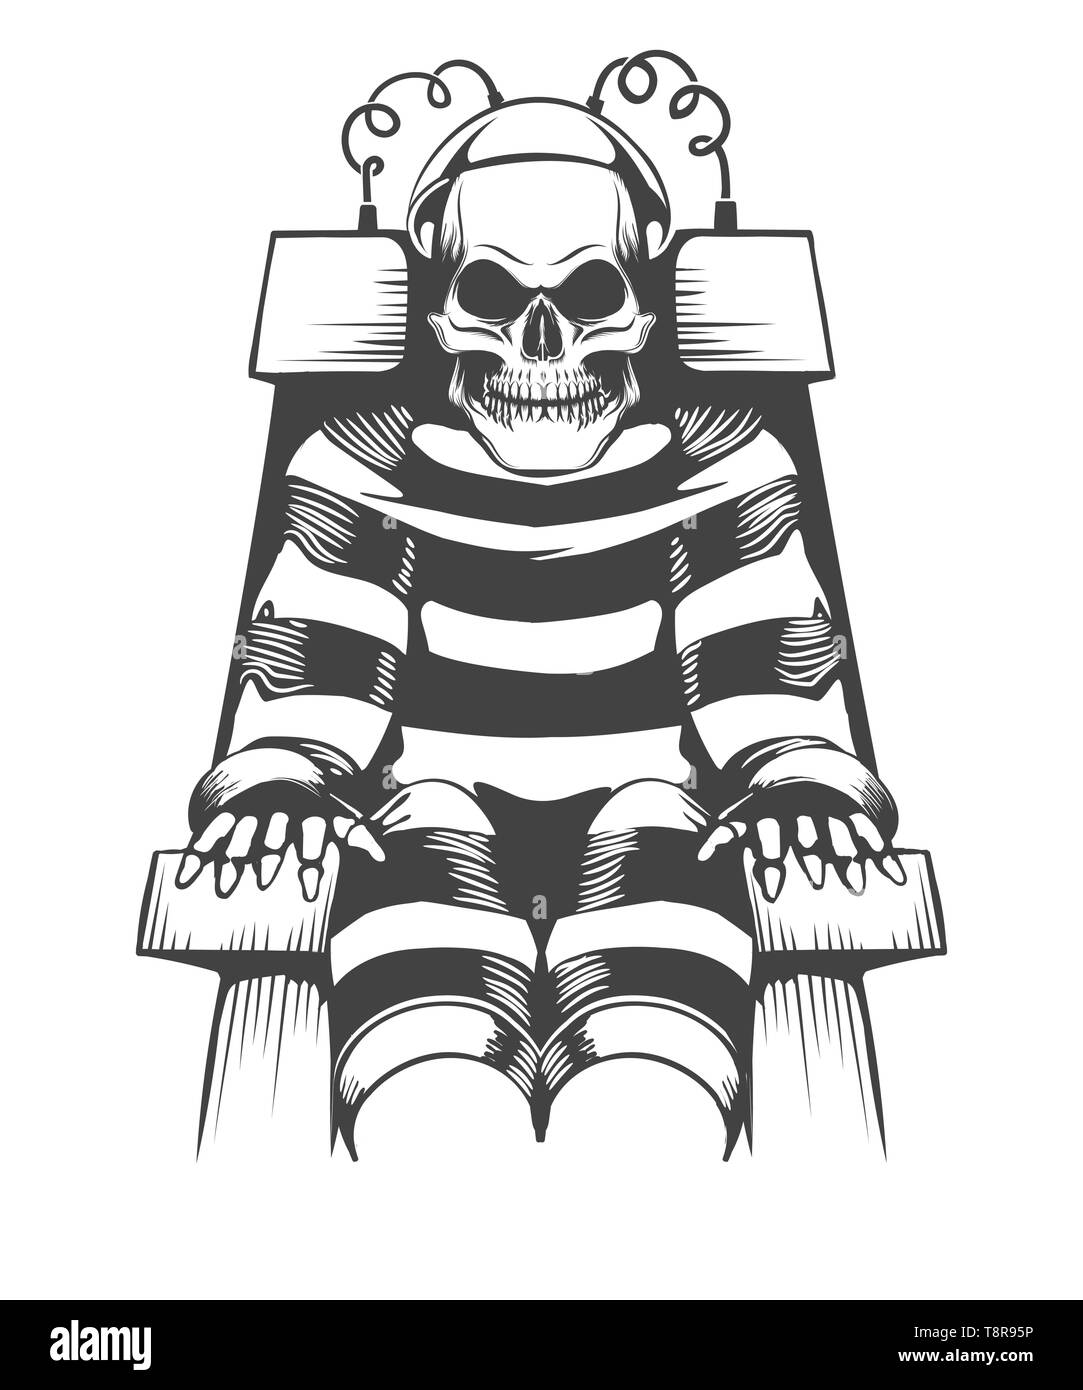 Scheletro umano siede sulla sedia elettrica. Sentenza e il concetto di punizione in stile tatuaggio. Illustrazione Vettoriale Illustrazione Vettoriale